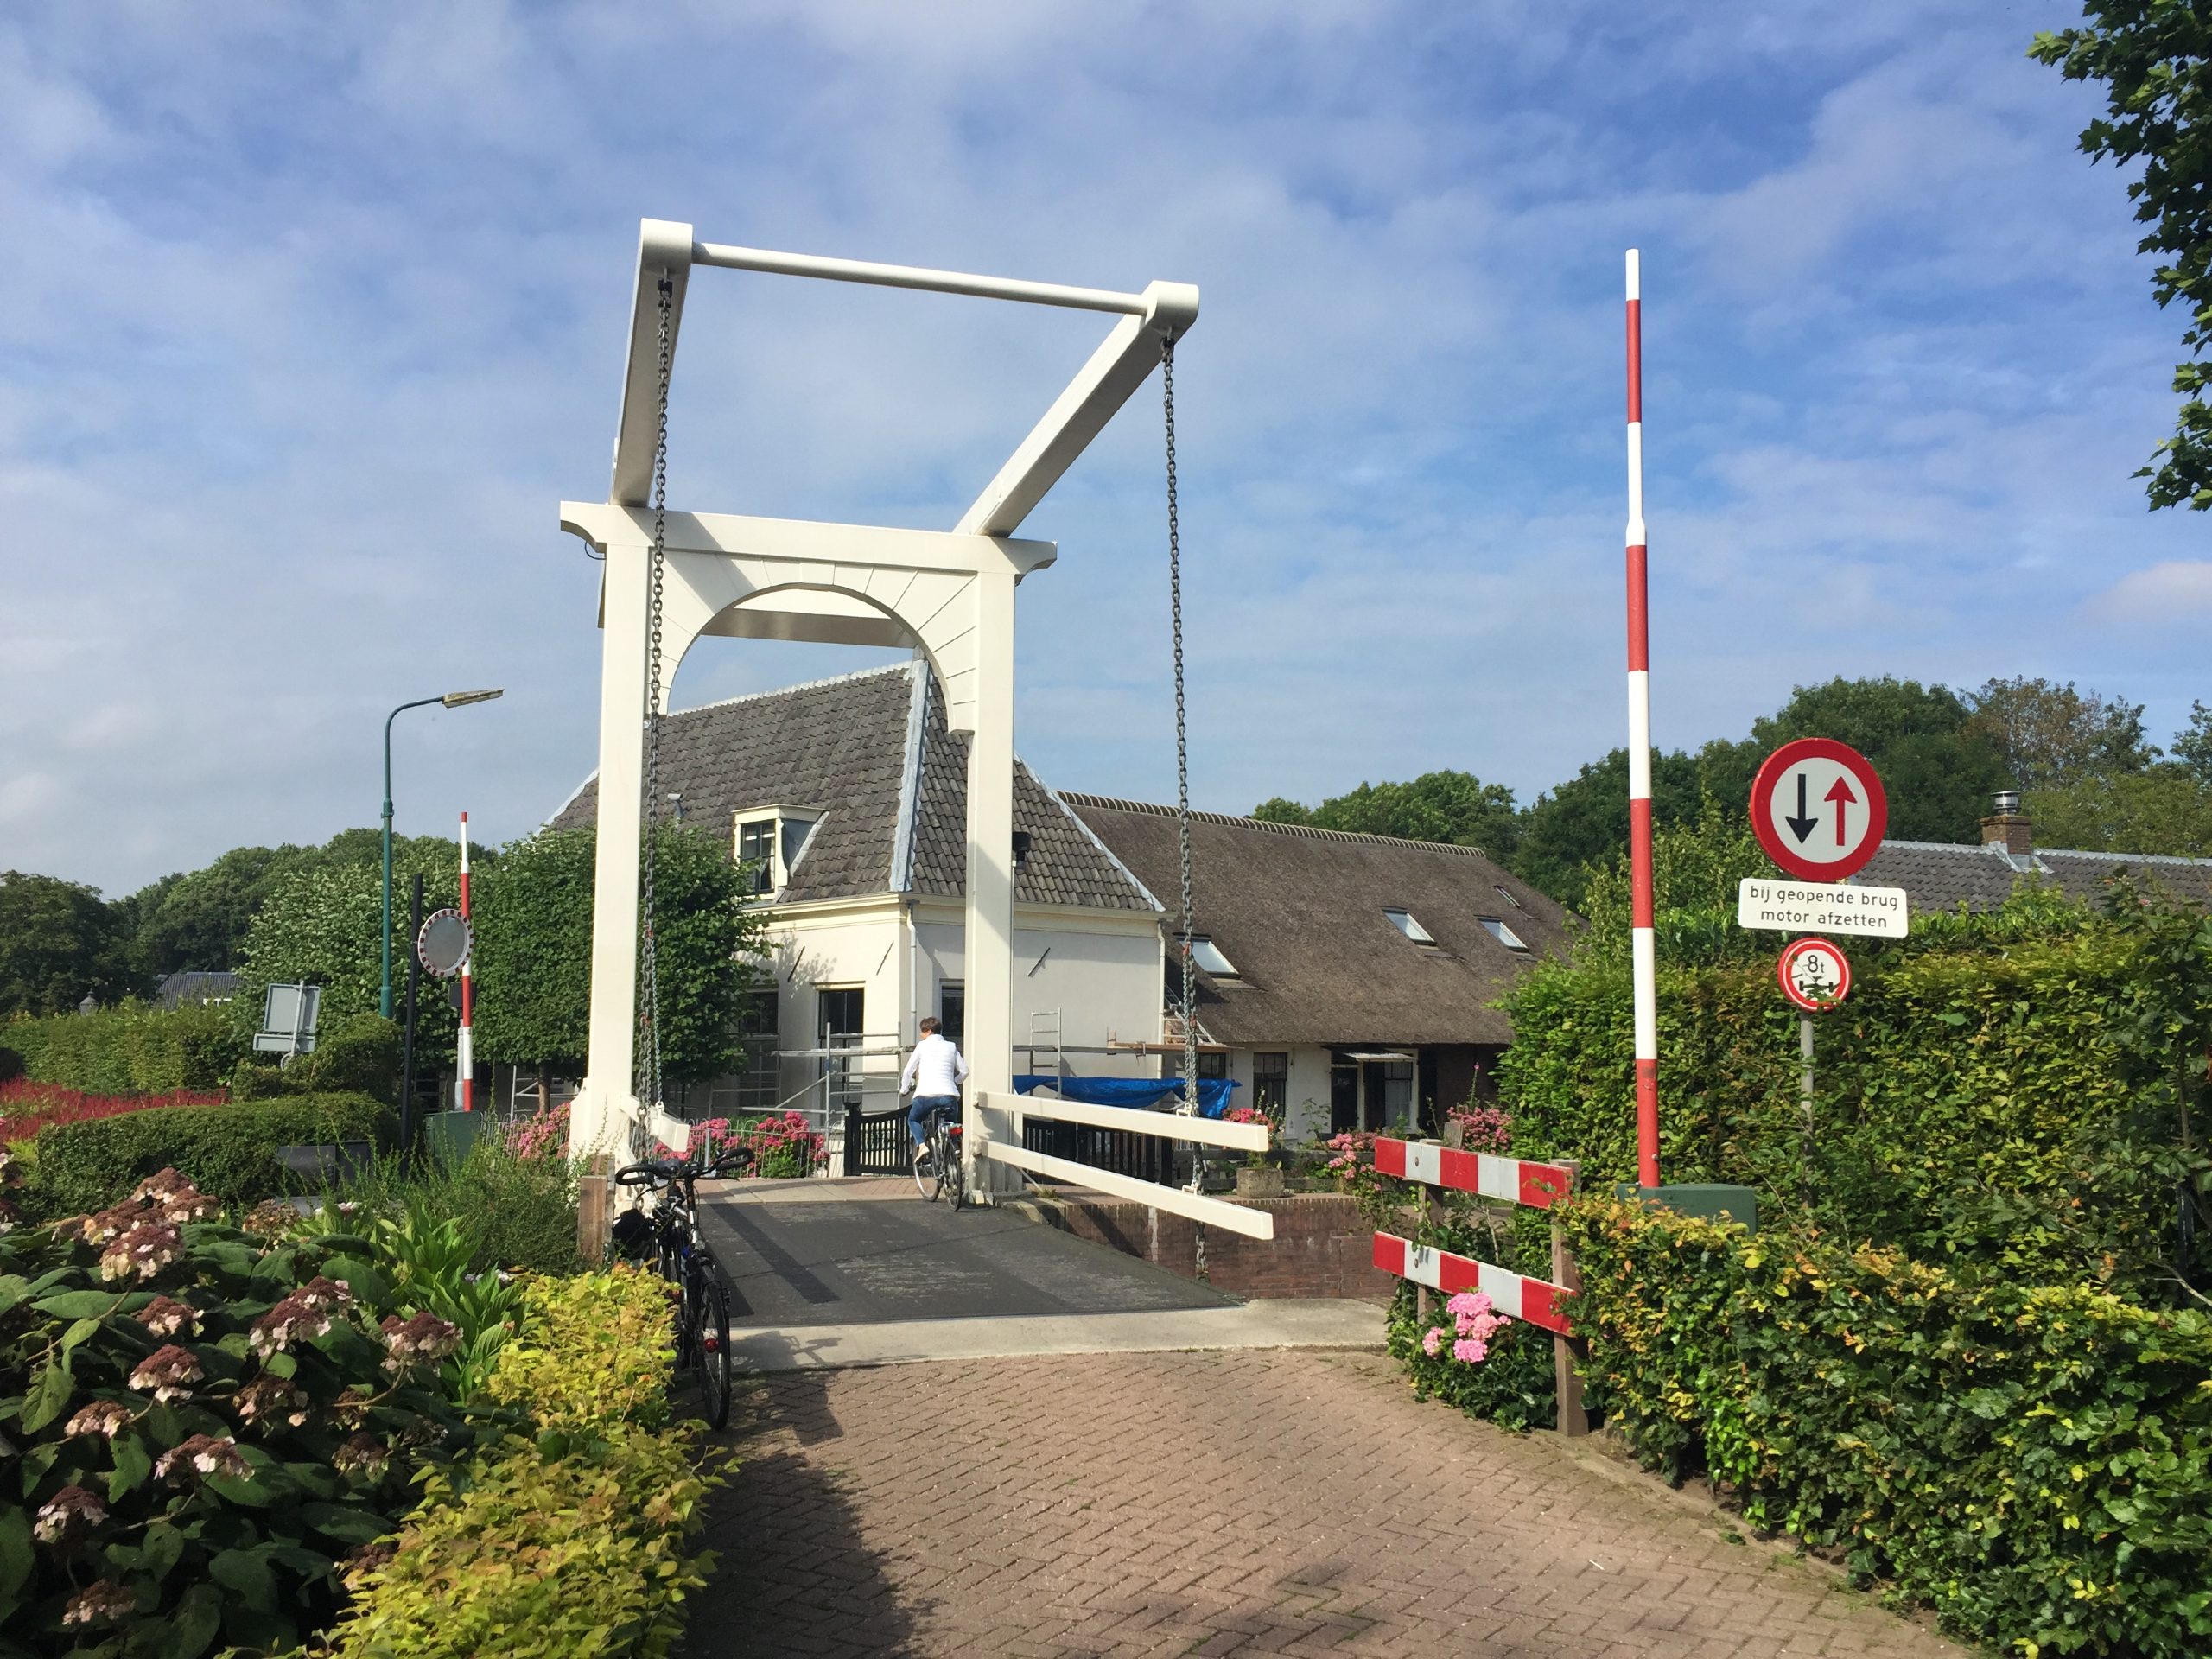 Bridge over the river in Vecht (Netherlands)